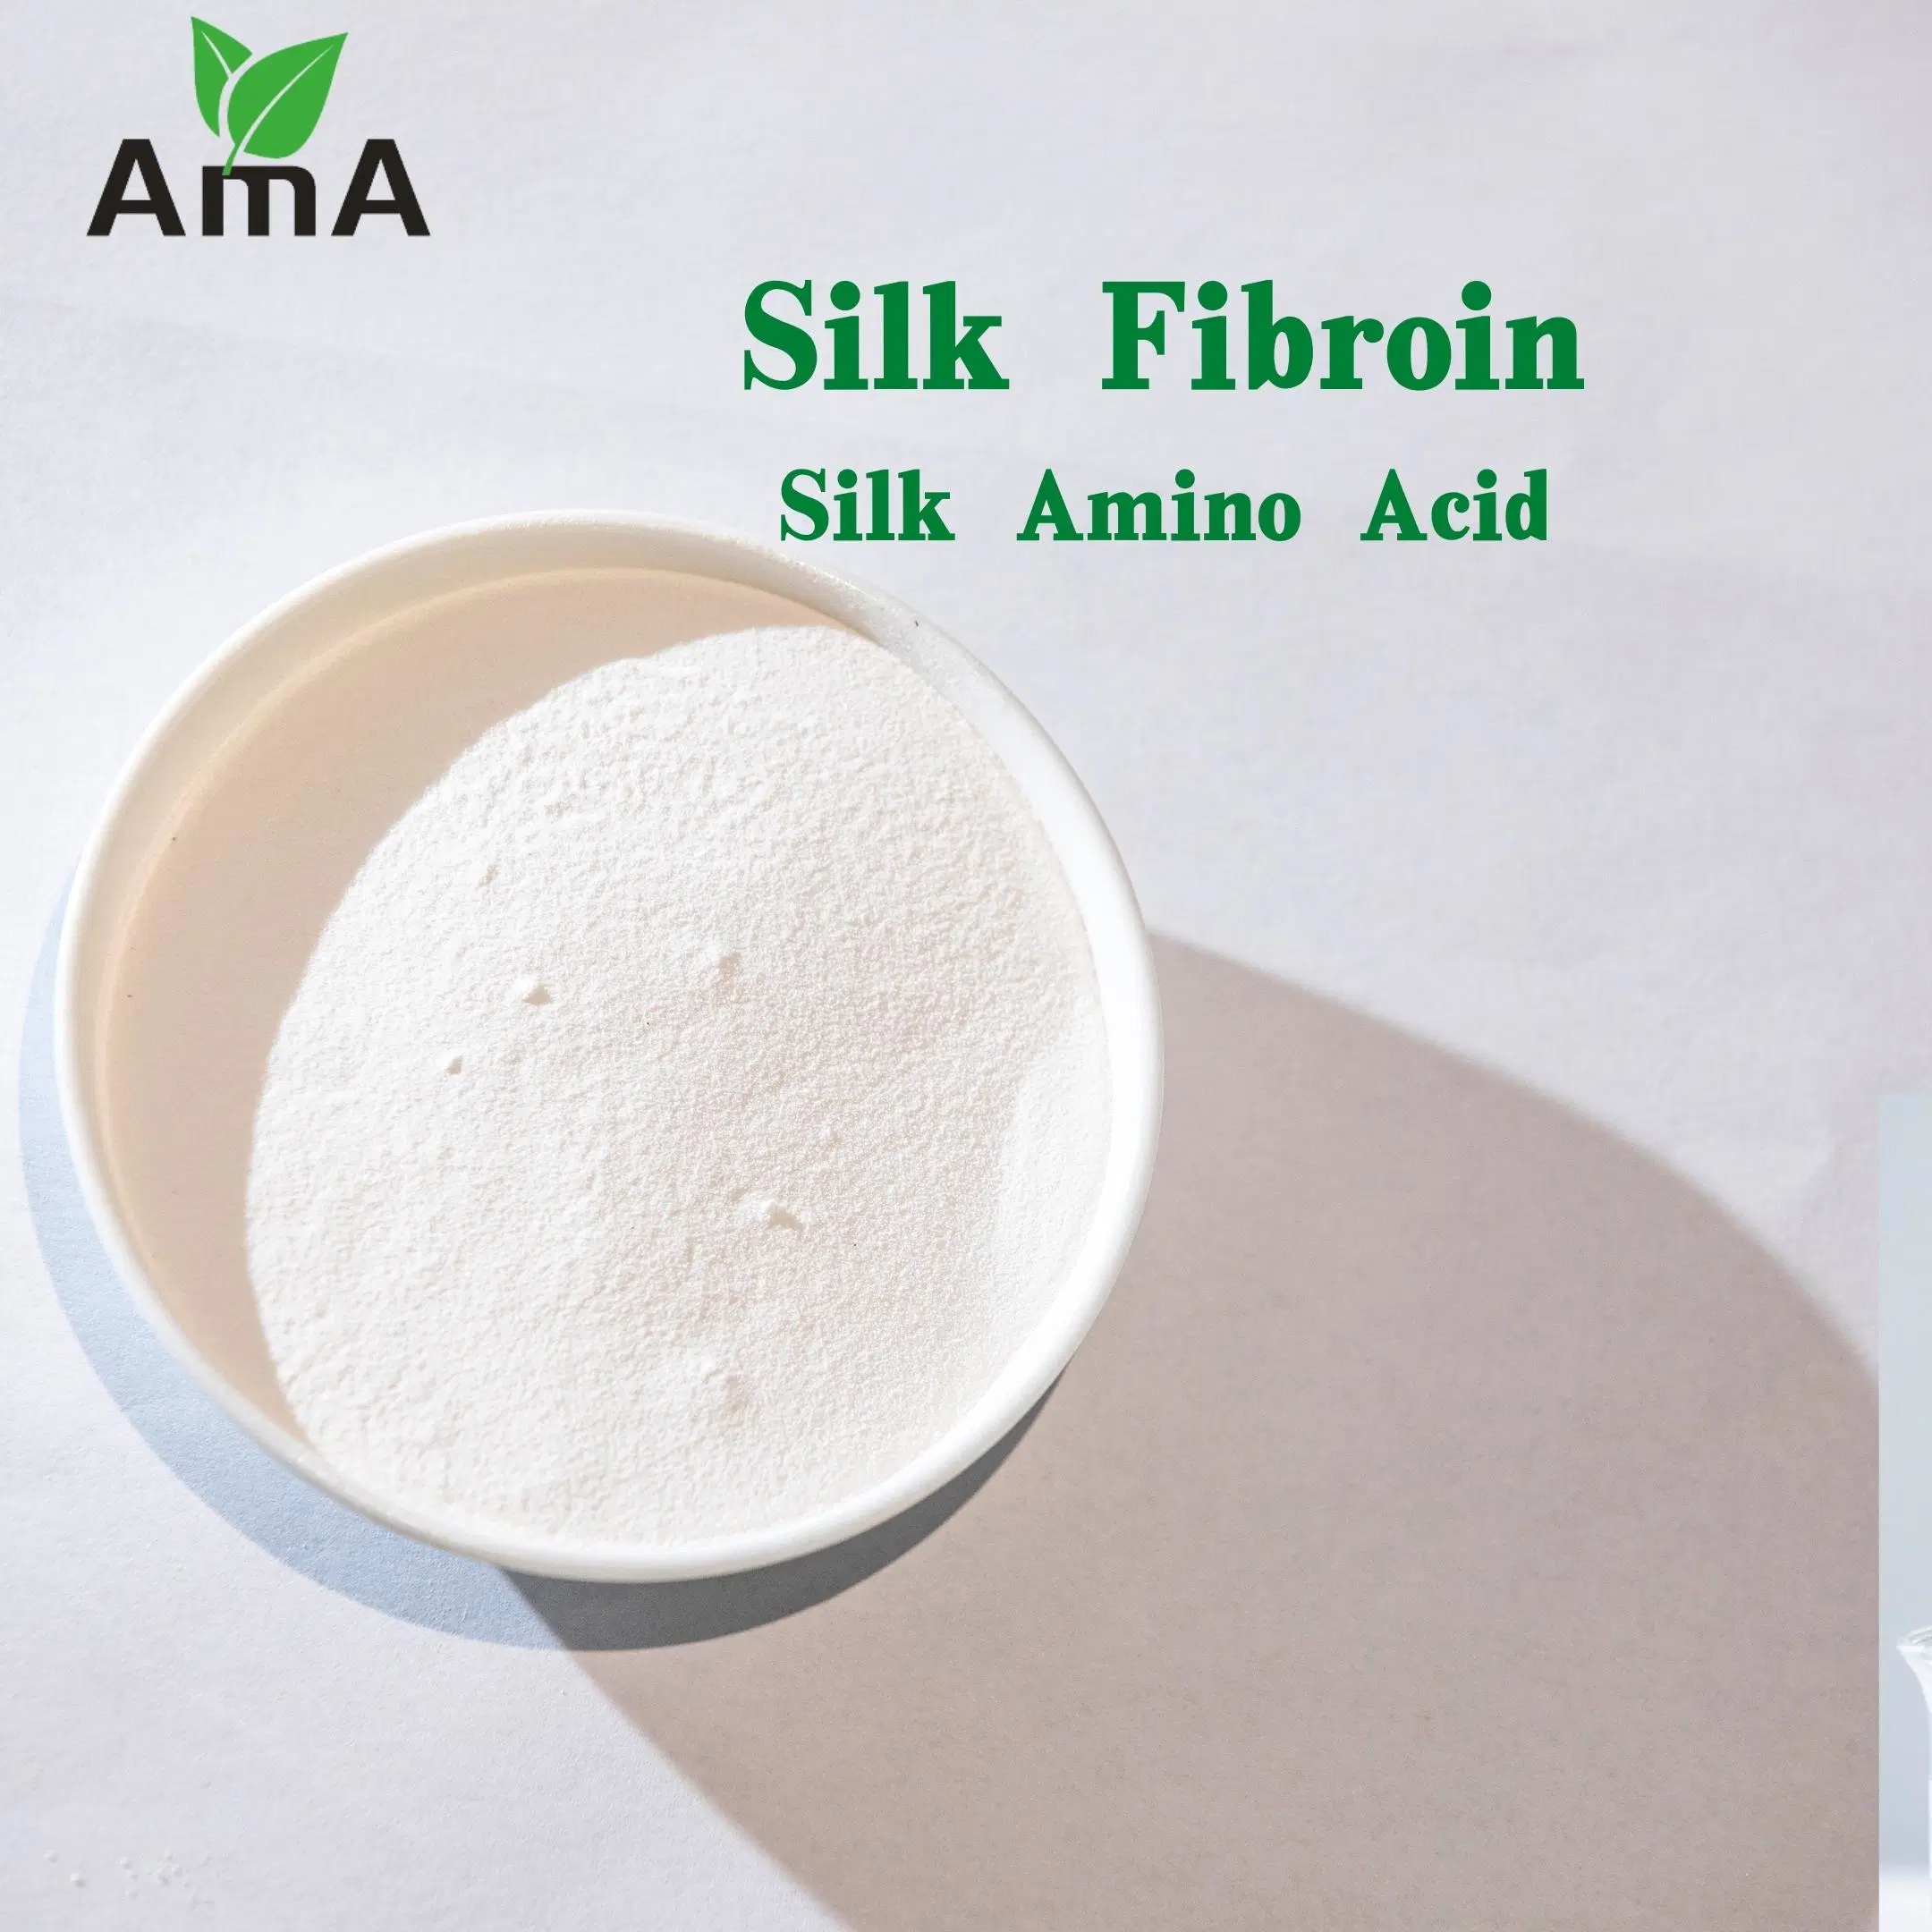 Cosmétique hydrolysé en soie de qualité La poudre de protéine soluble dans l'eau de la soie fibroïne complètement